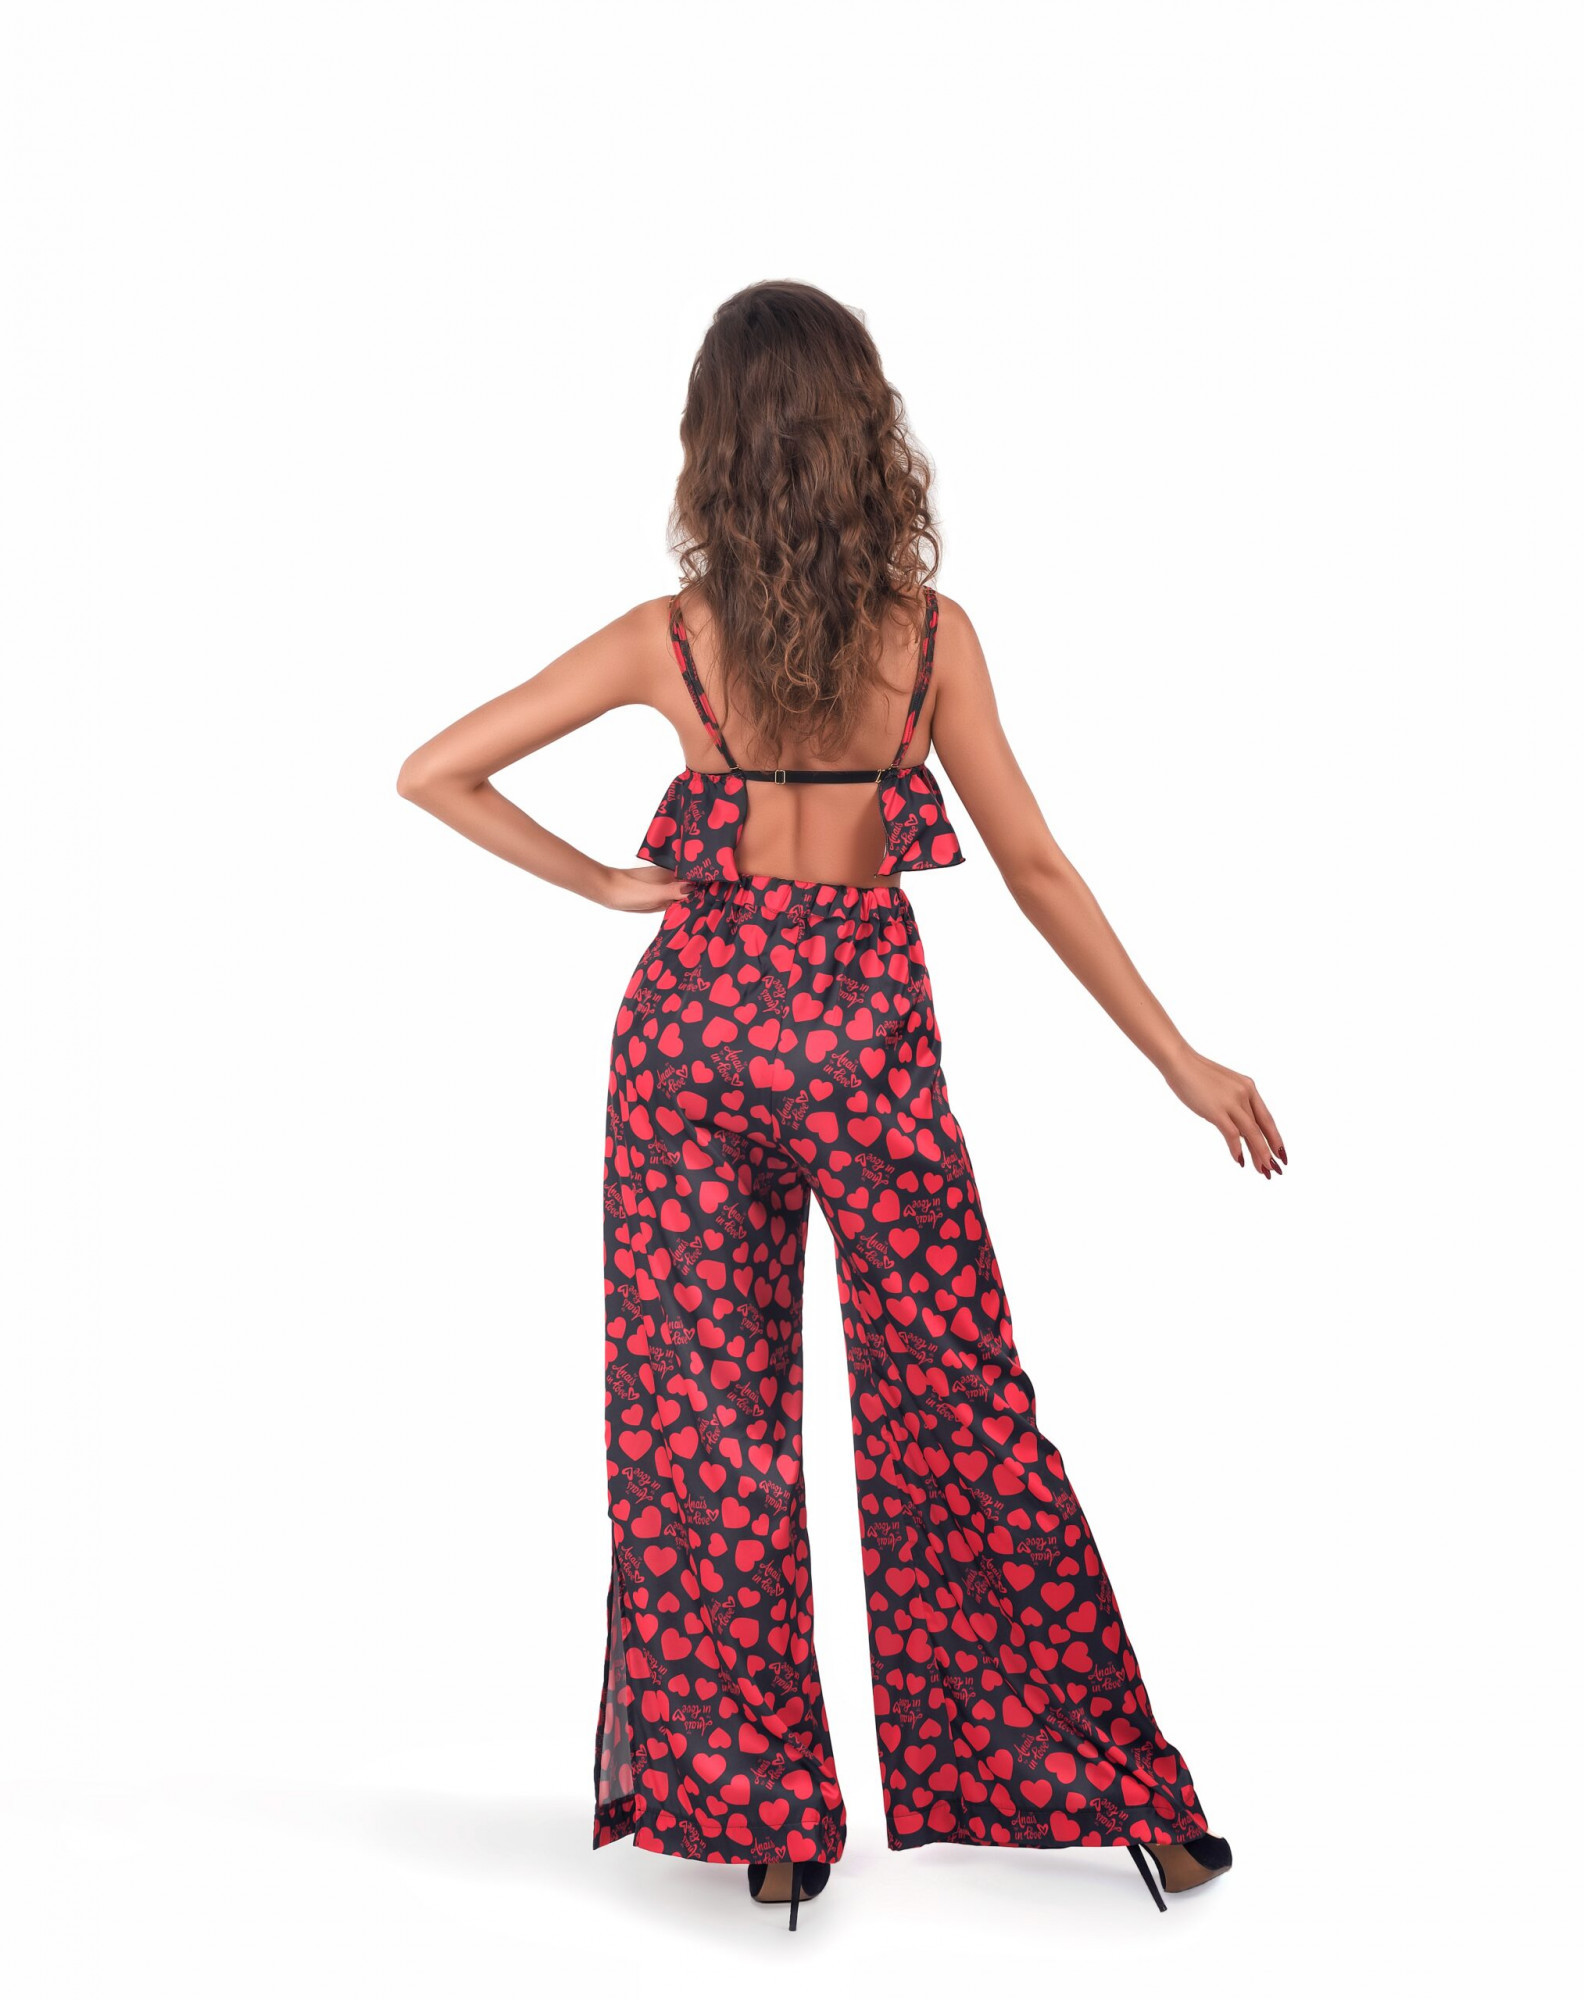 Krásný komplet Morgan Bra + Pants - Anais černá/červená S/M